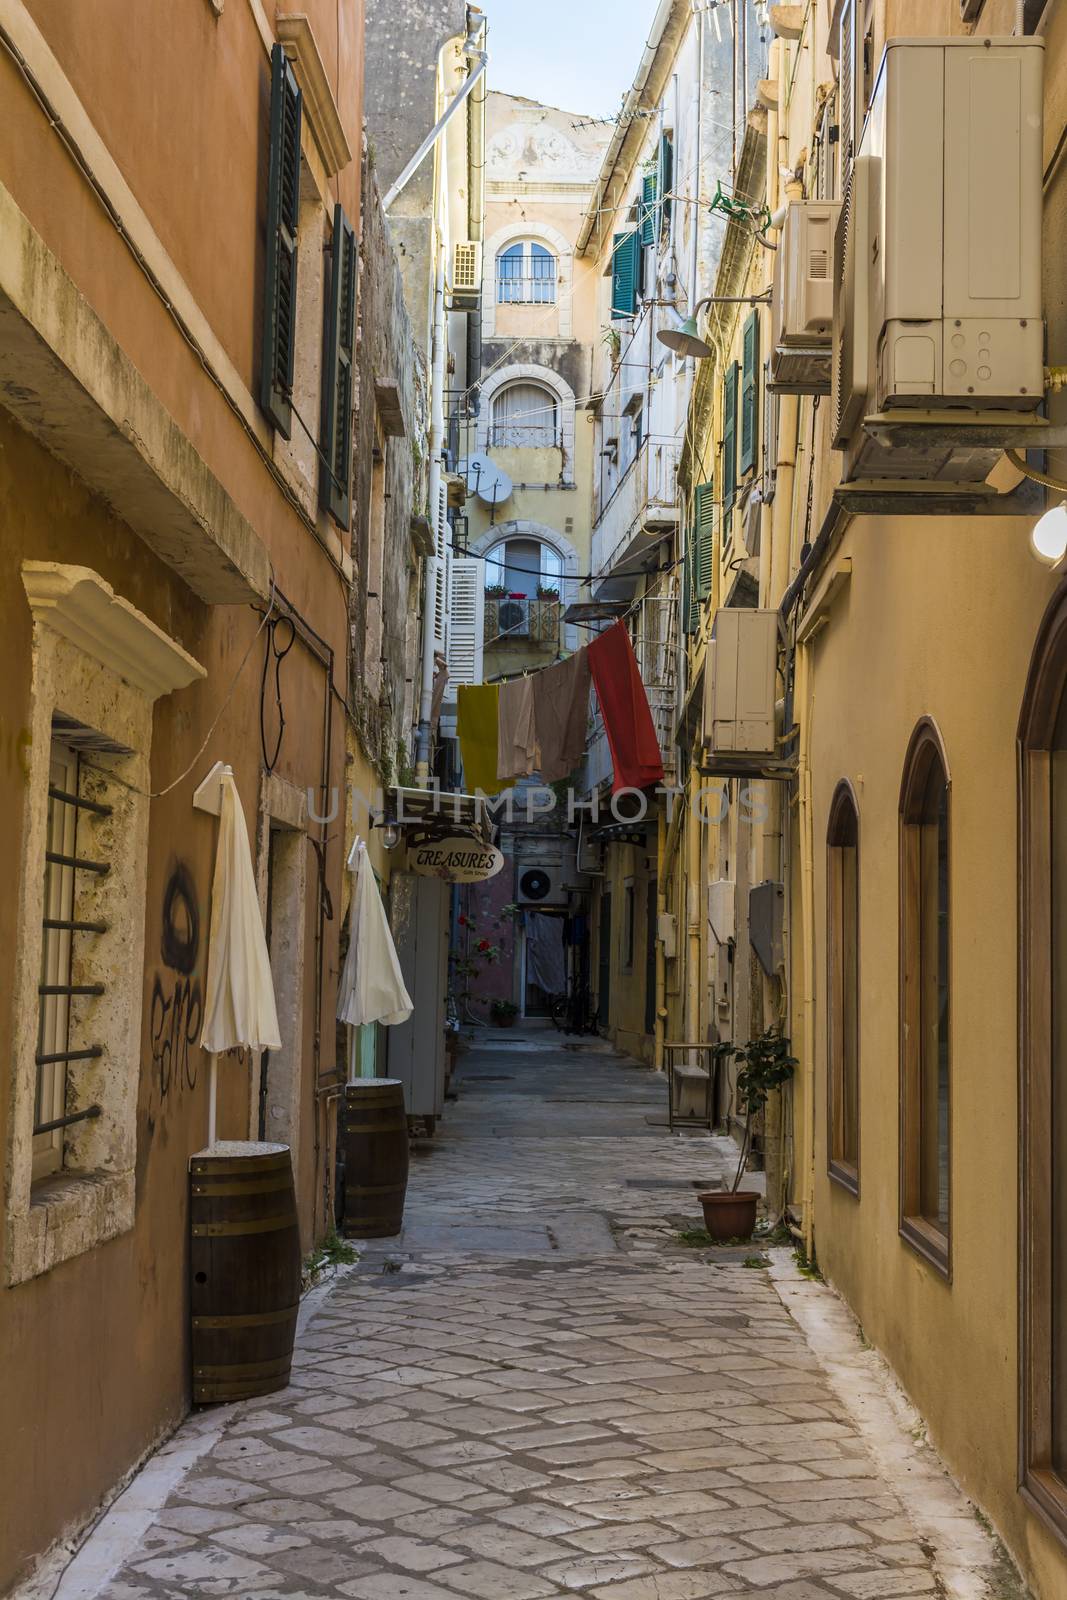 Alleyway in Corfu old town. Greece